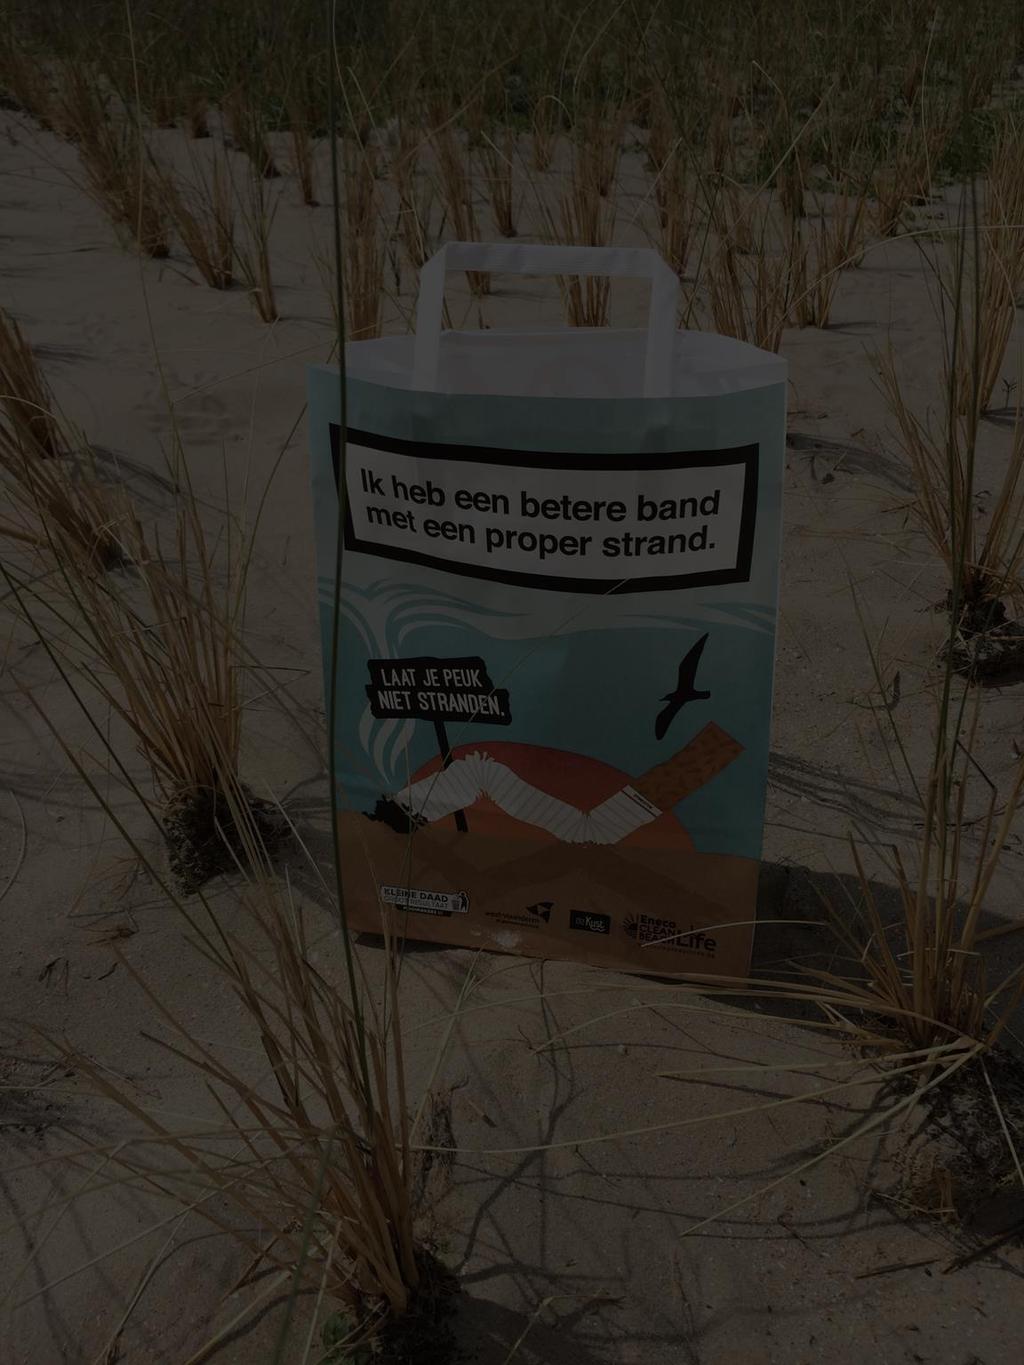 3. Afval op het strand Zowel aangespoeld afval, als achtergelaten op het strand Niet enkel door scheepvaart, maar ook toeristen zelf.